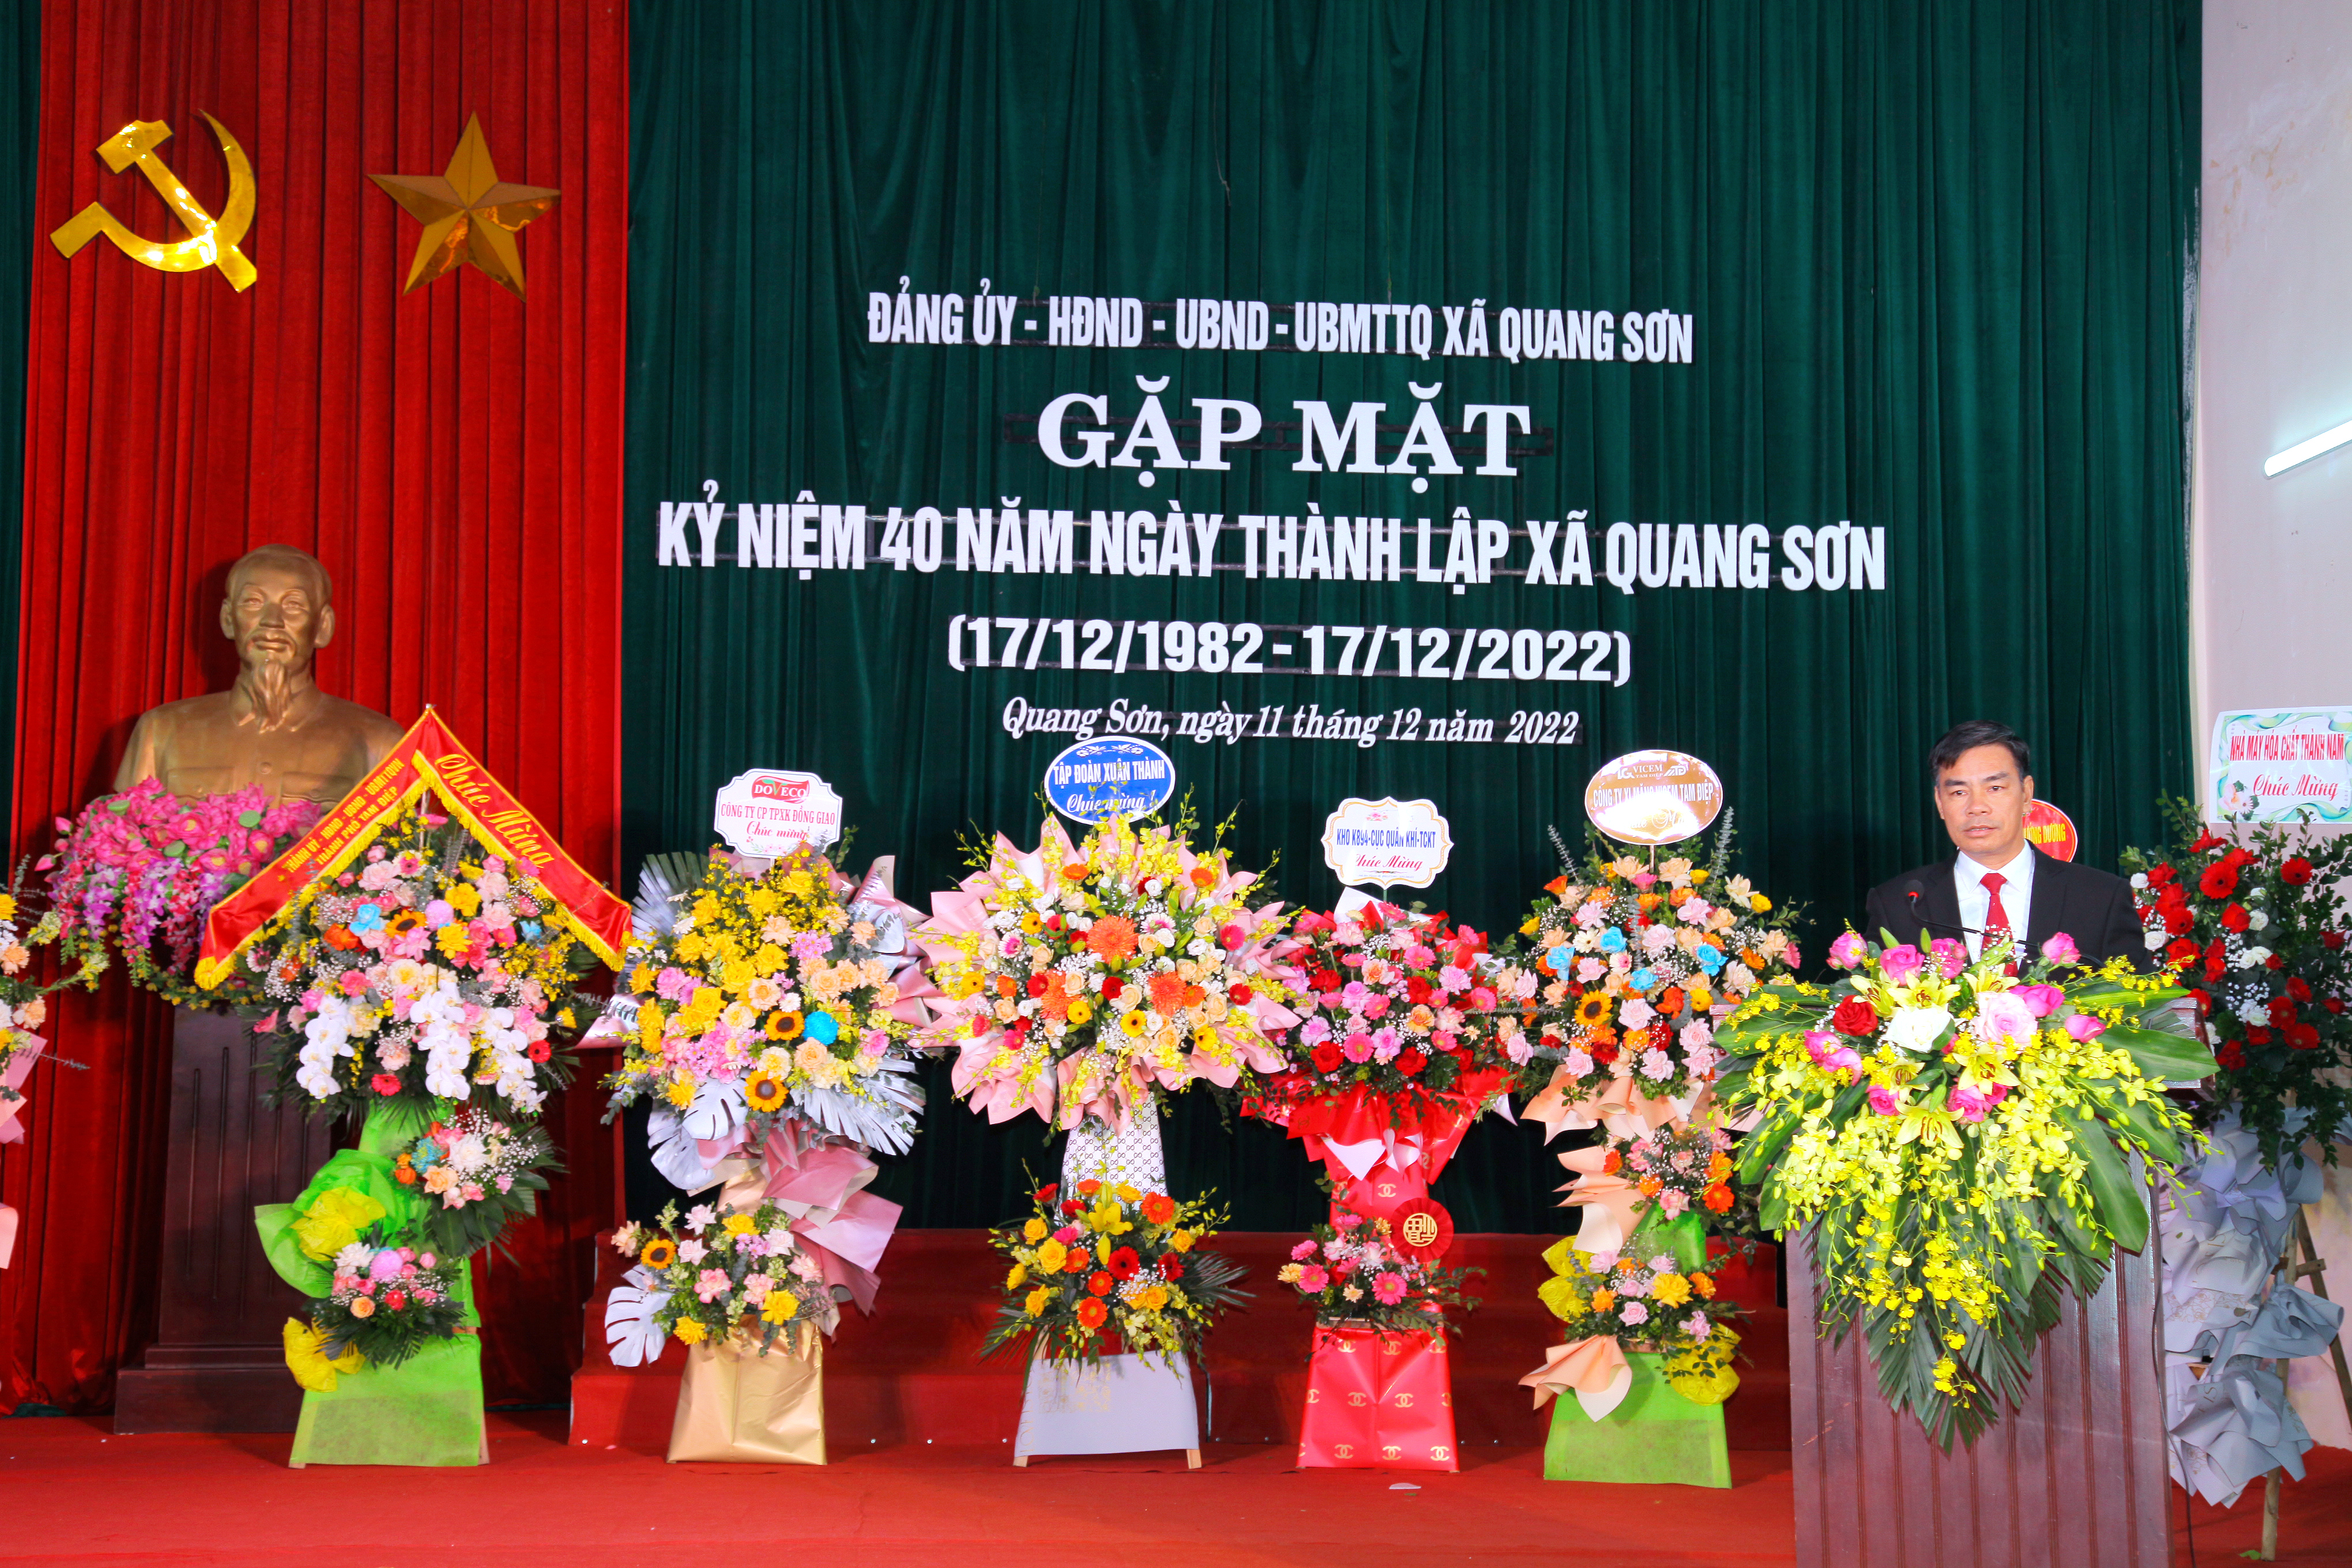 Đảng uỷ, HĐND, UBND xã Quang Sơn tổ chức gặp mặt kỷ niệm 40 năm ngày thành lập xã (17/12/1982-17/12/202)